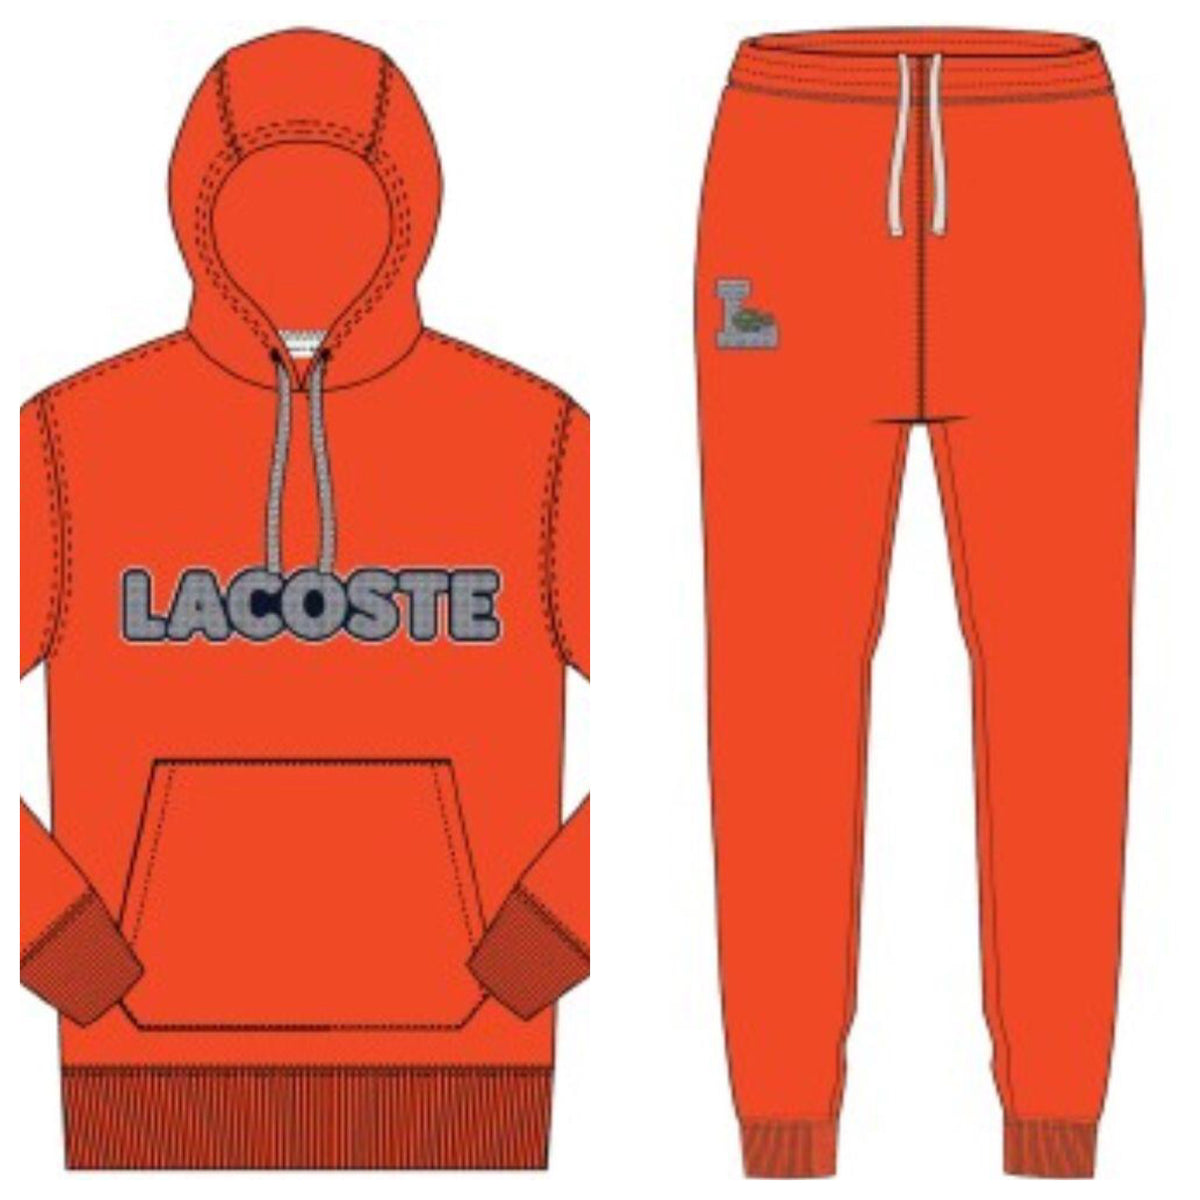 Lacoste-Fleece Sweat Set-Red • 3B2